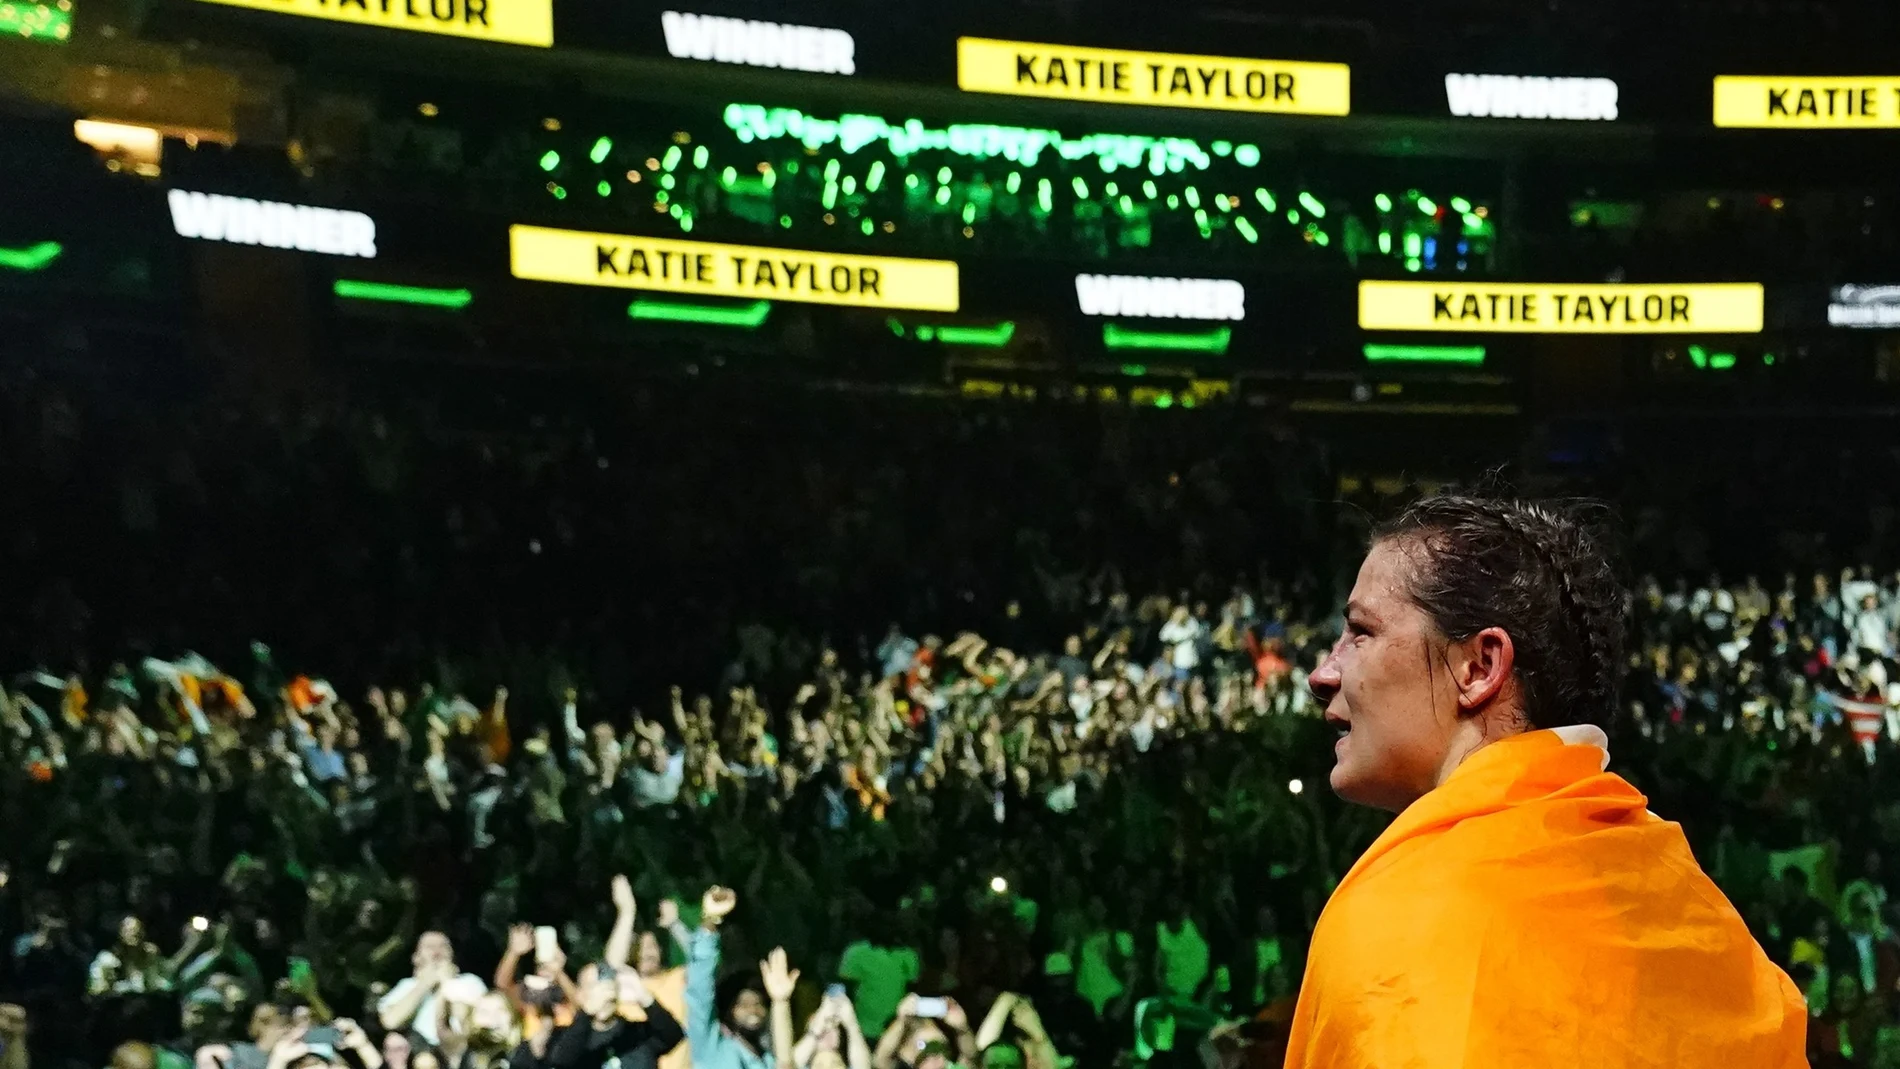 Katie Taylor, envuelta en la bandera irlandesa, mira a las gradas del, Madison Square Garden después de su victoria